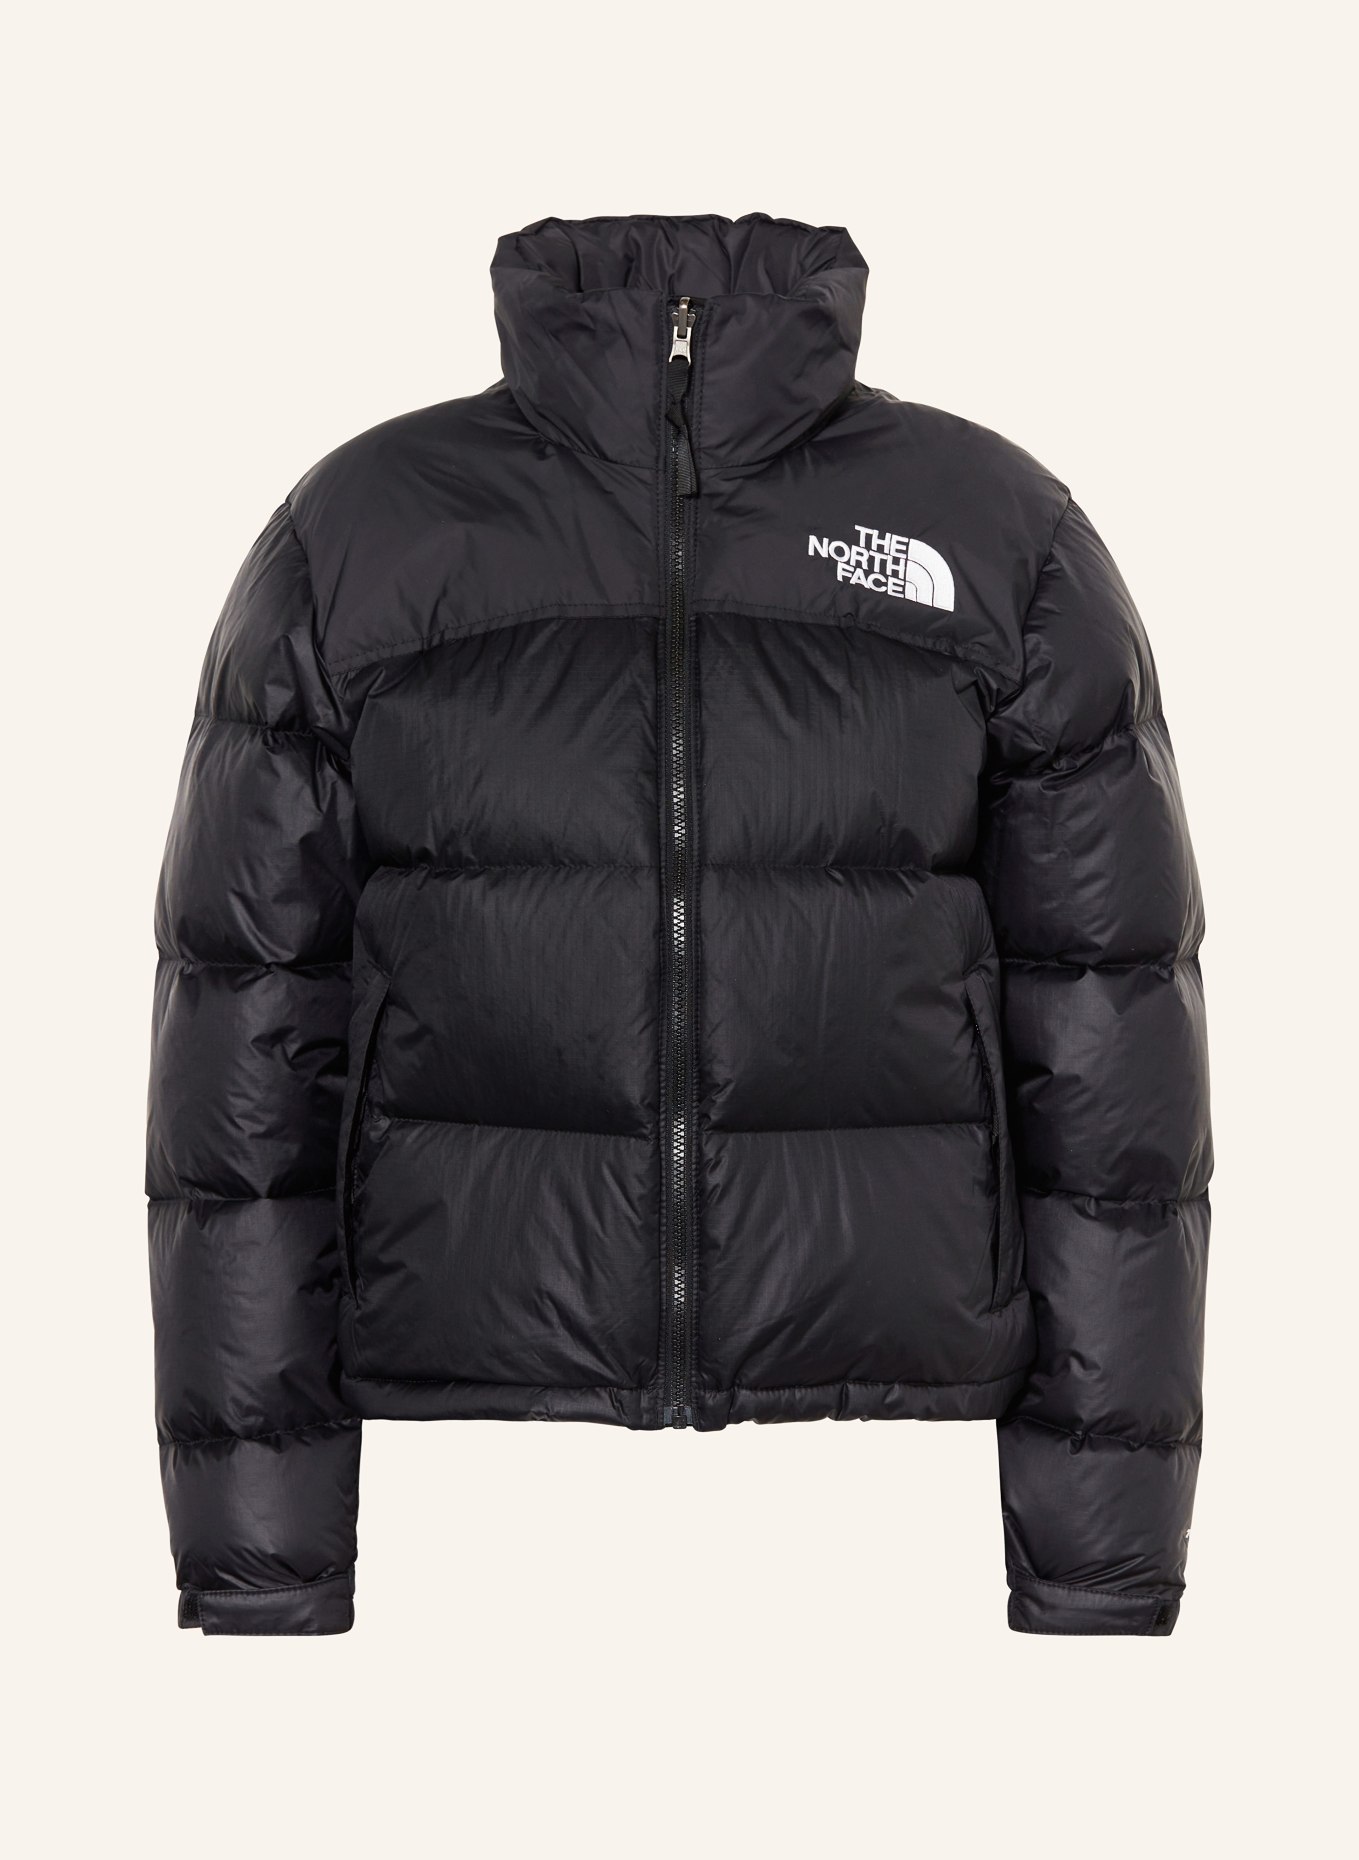 THE NORTH FACE Down jacket 1996 RETRO NUPTSE, Color: BLACK (Image 1)